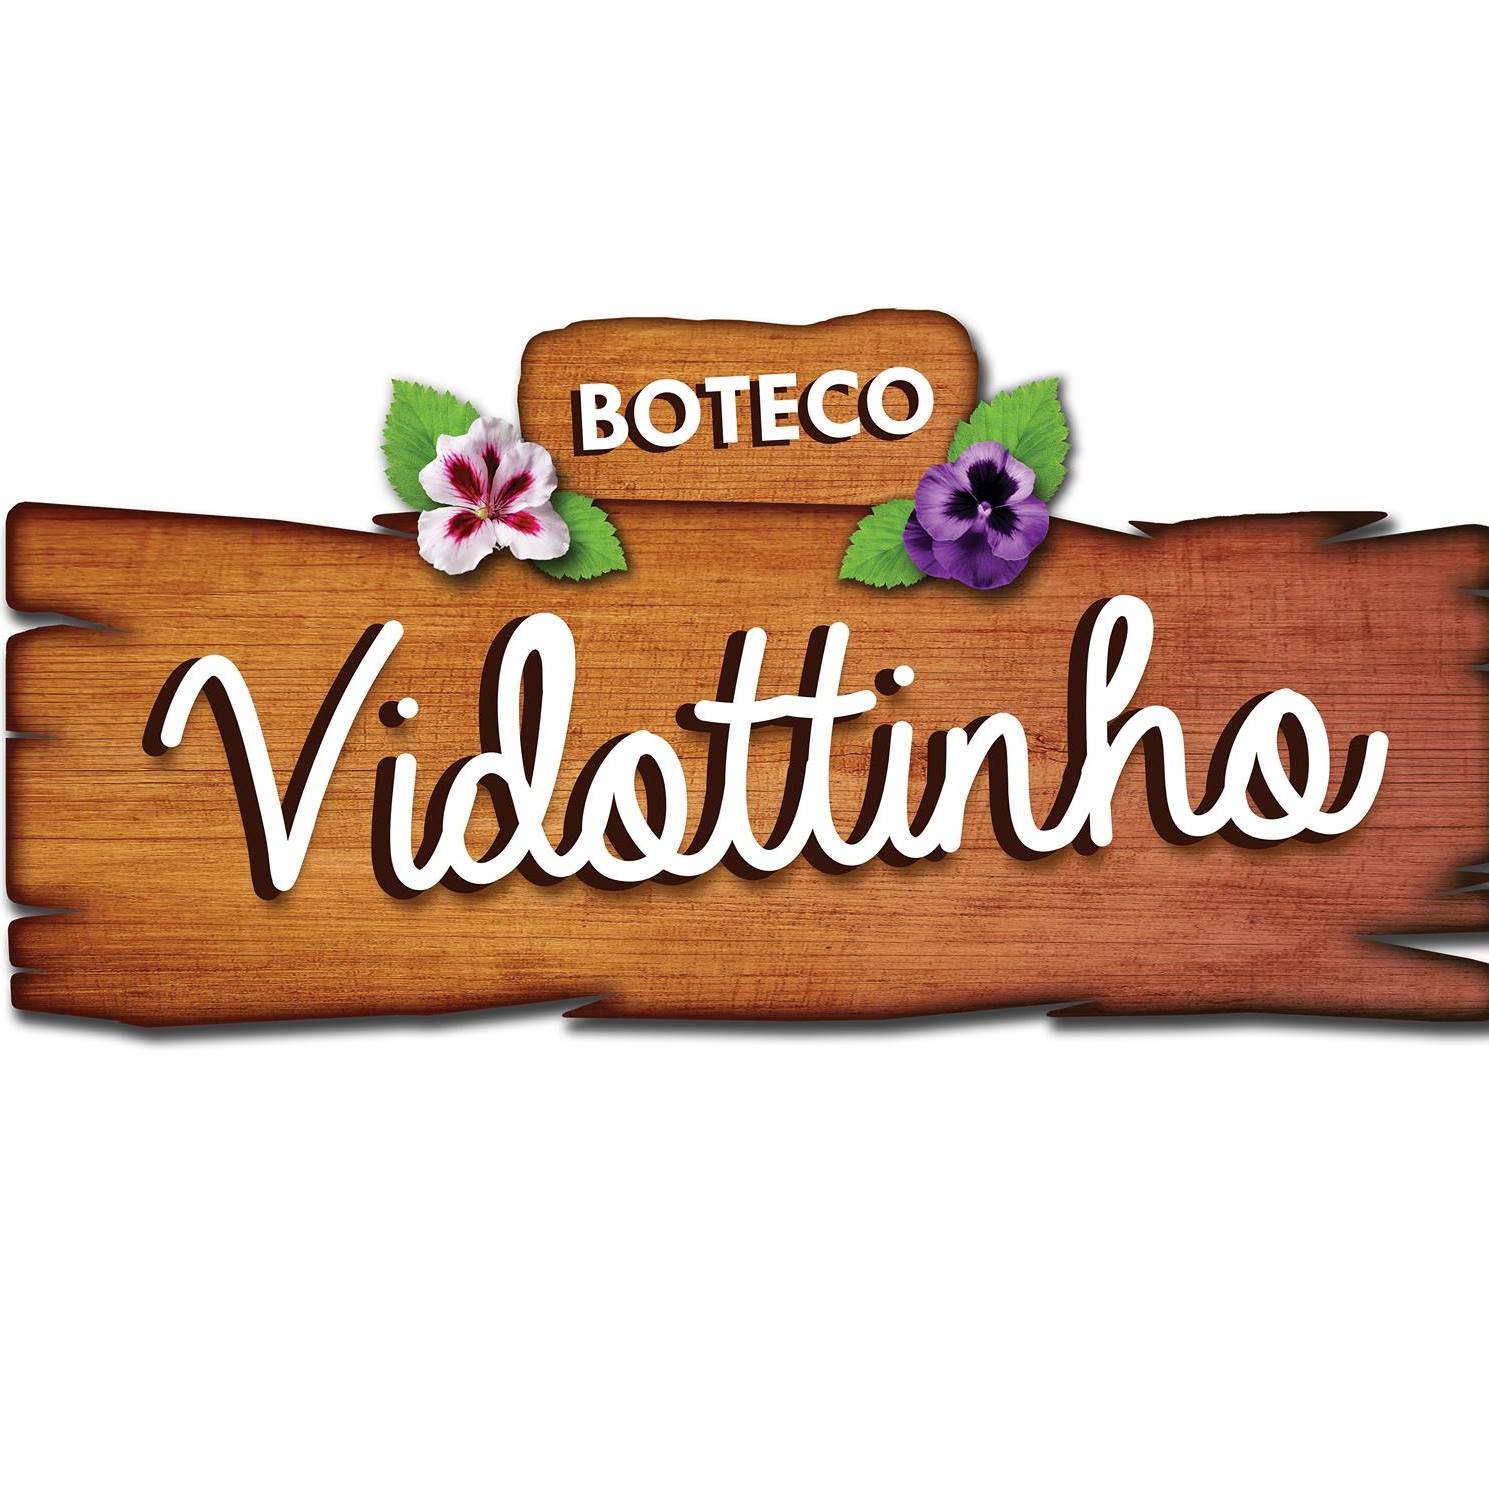 Boteco Vidottinho - Barão Geraldo